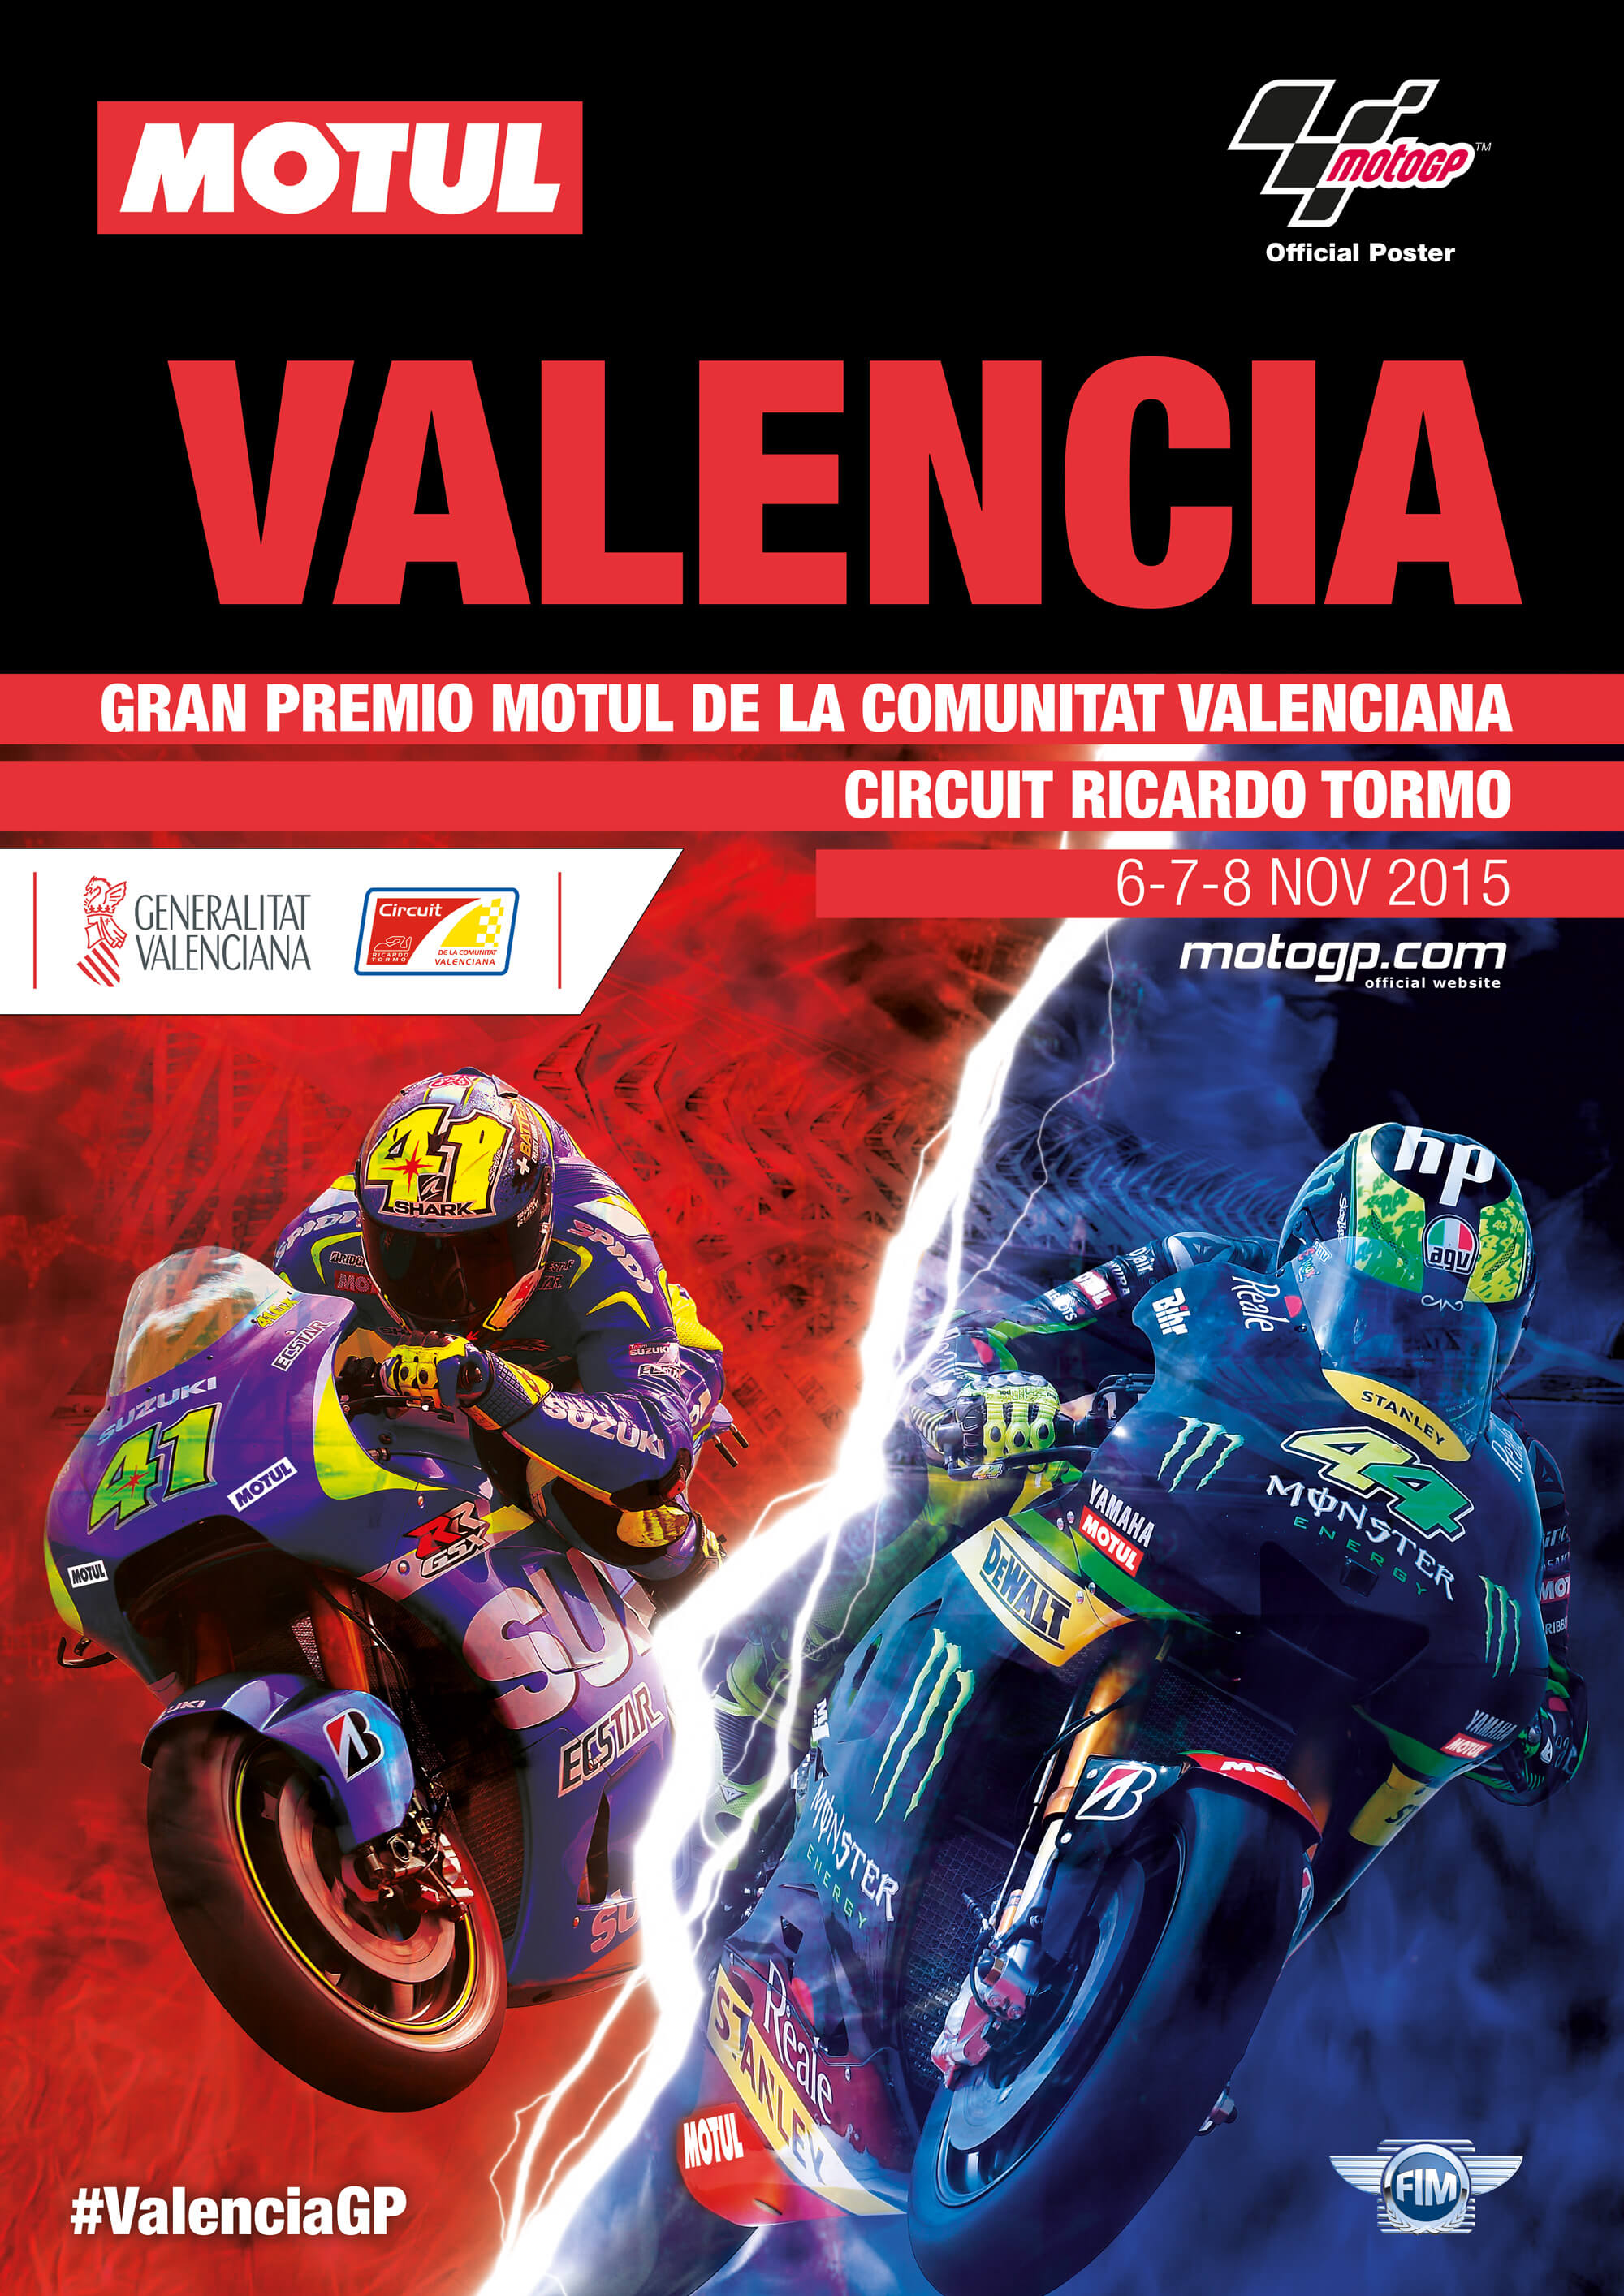 Gran Premio Motul de la Comunitat Valenciana 2015 в городе Валенсия, Испания.